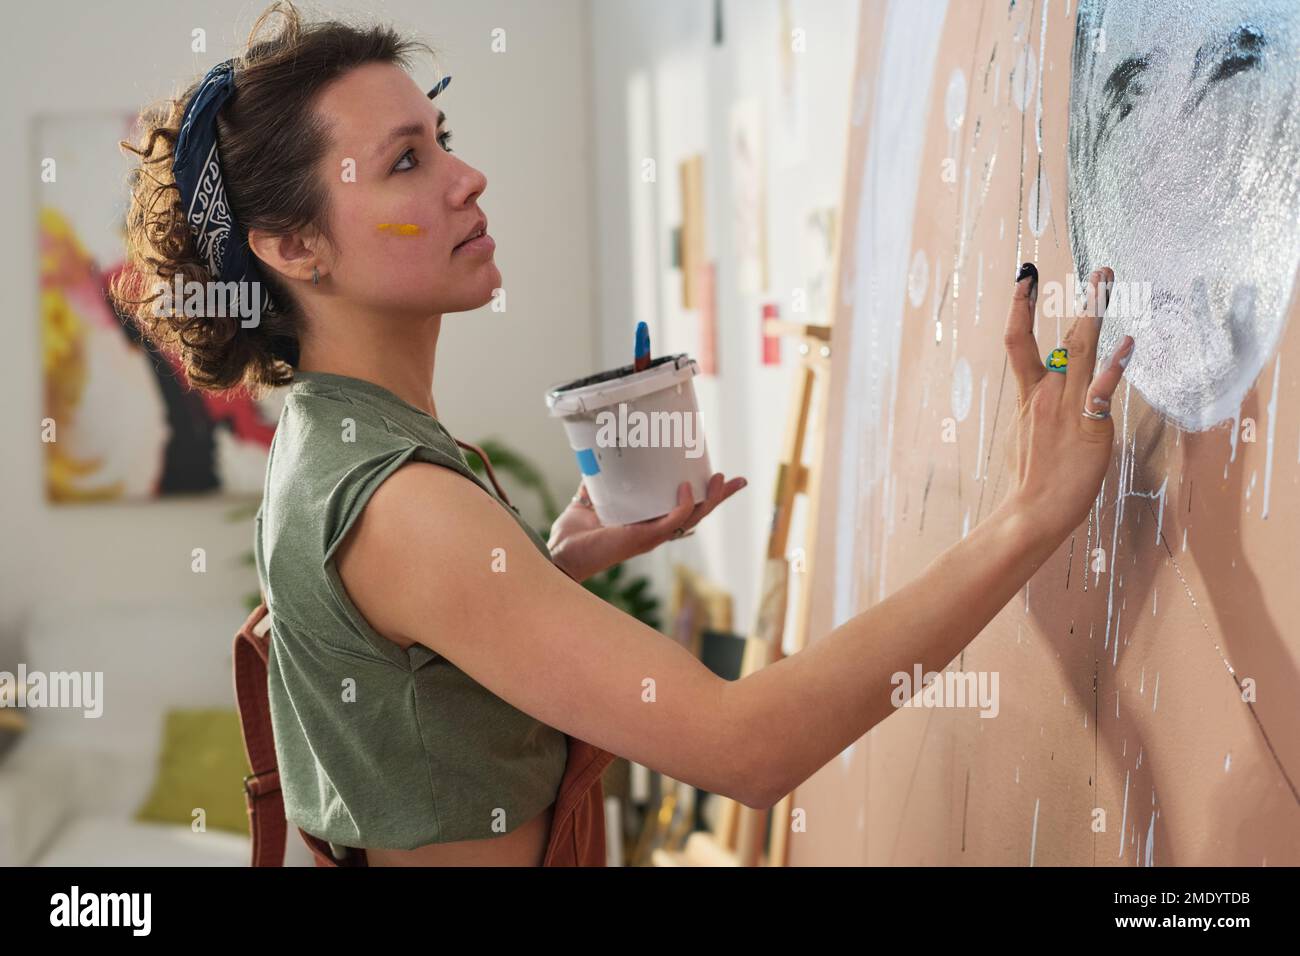 Chica creativa juvenil con pequeño cubo de pintura creando nueva obra maestra con las manos en panel grande por la pared de su taller o estudio casero Foto de stock